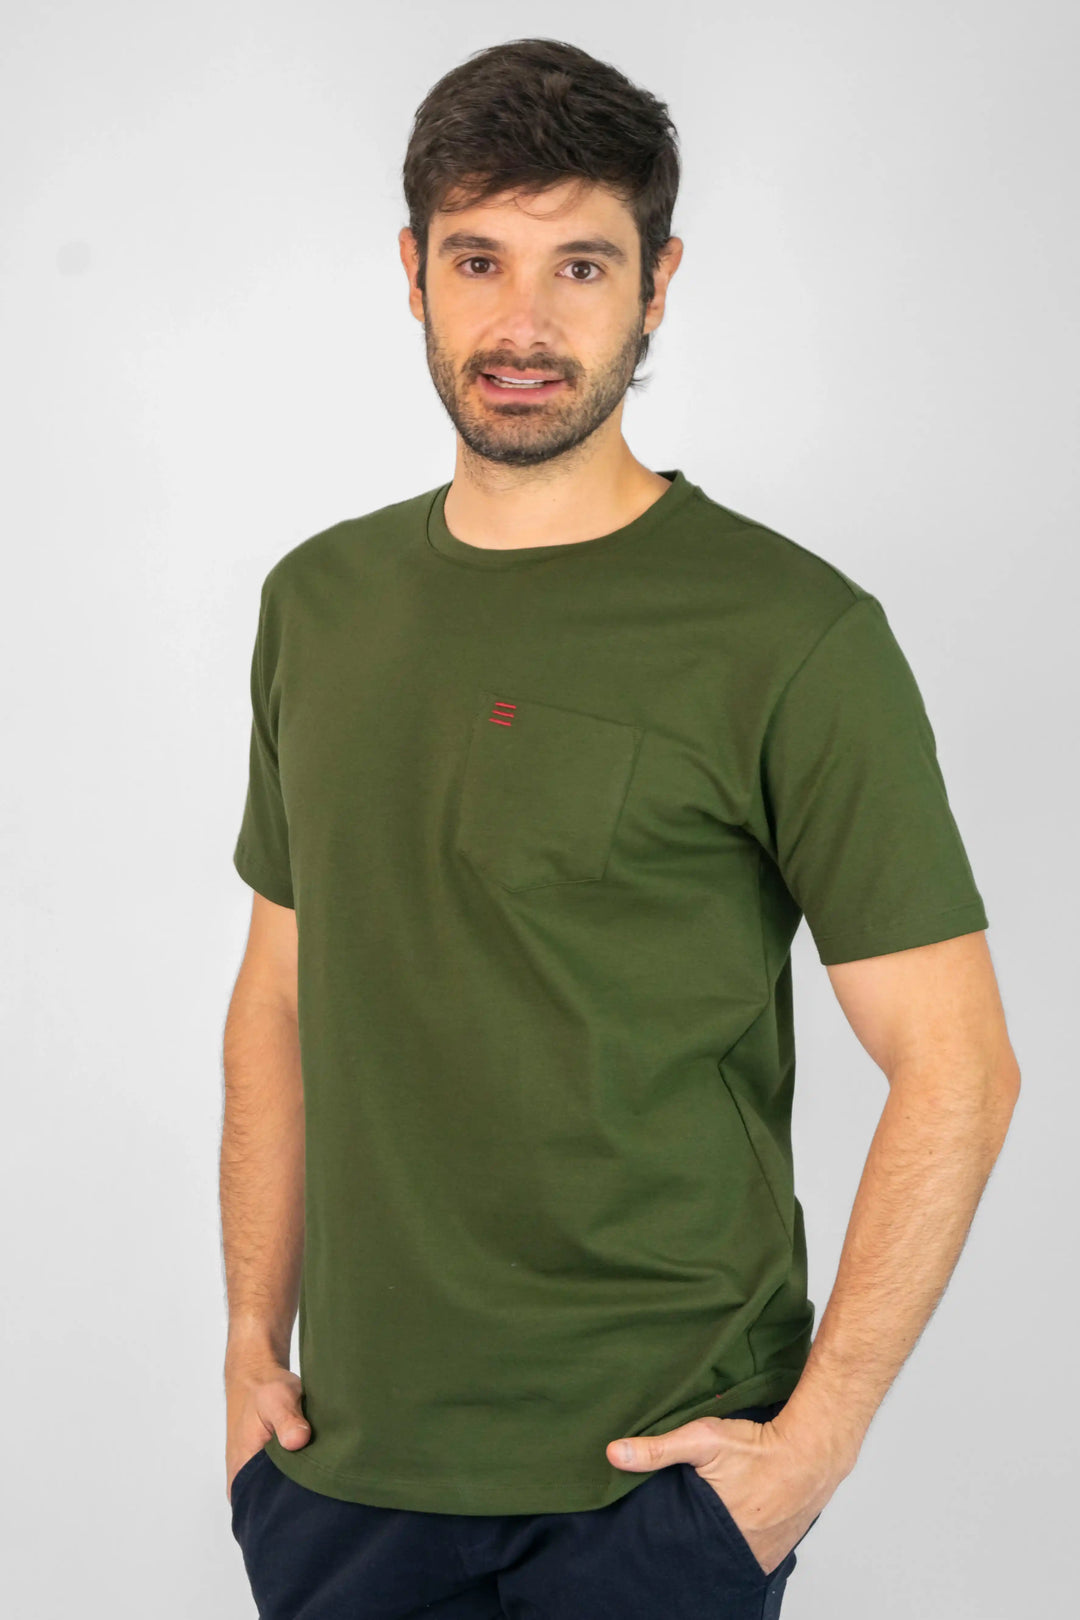 Camiseta para hombre color verde. Bolsillo en el pecho.  Perfectas para cualquier ocasión, cualquier día y cualquier clima